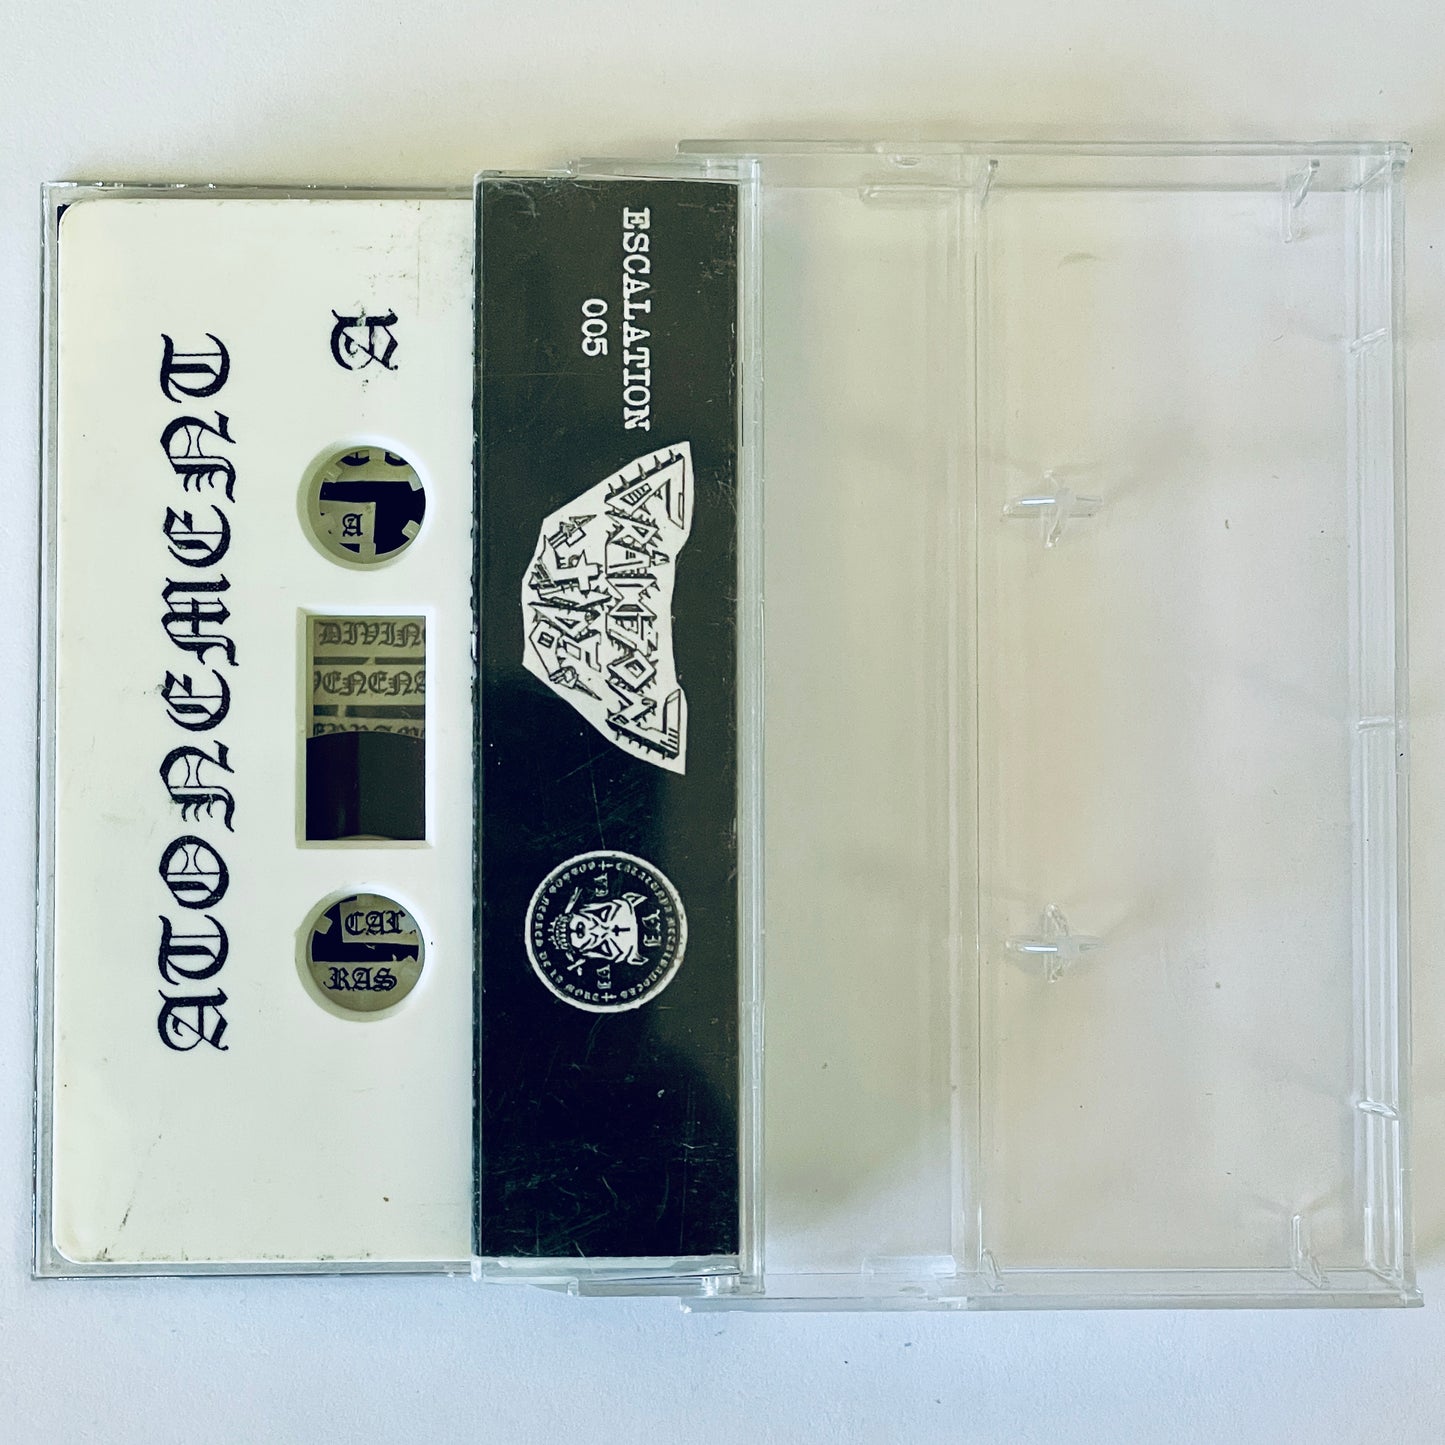 Atonement – Asco, miseria y rencor cassette tape (used)